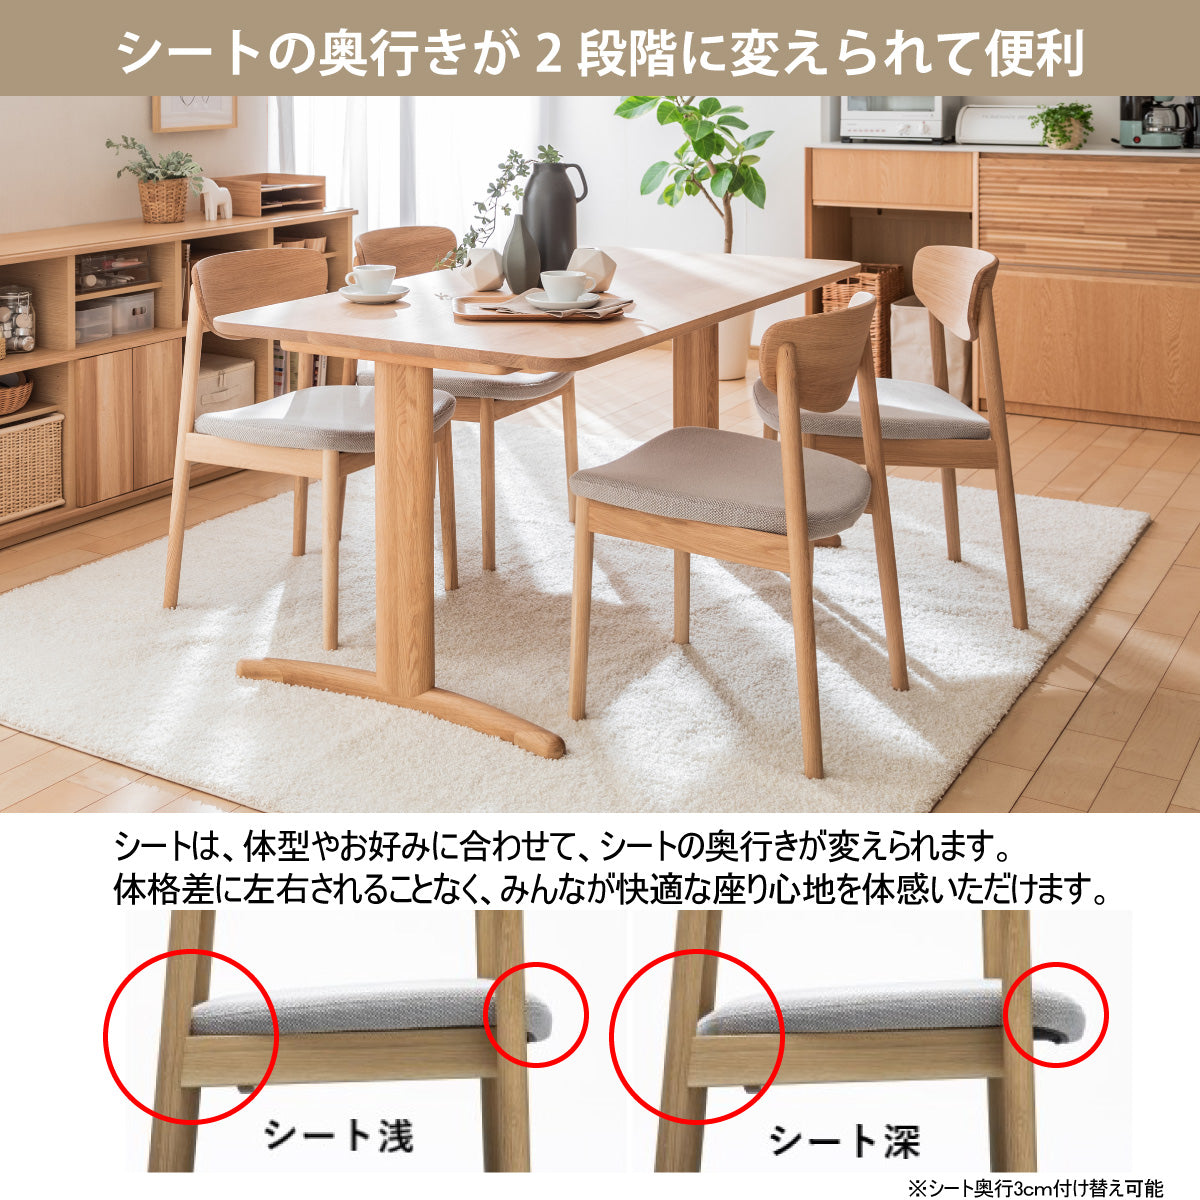 カリモク家具 カリモク ダイニングチェア /CU71モデル 平織布張 食堂